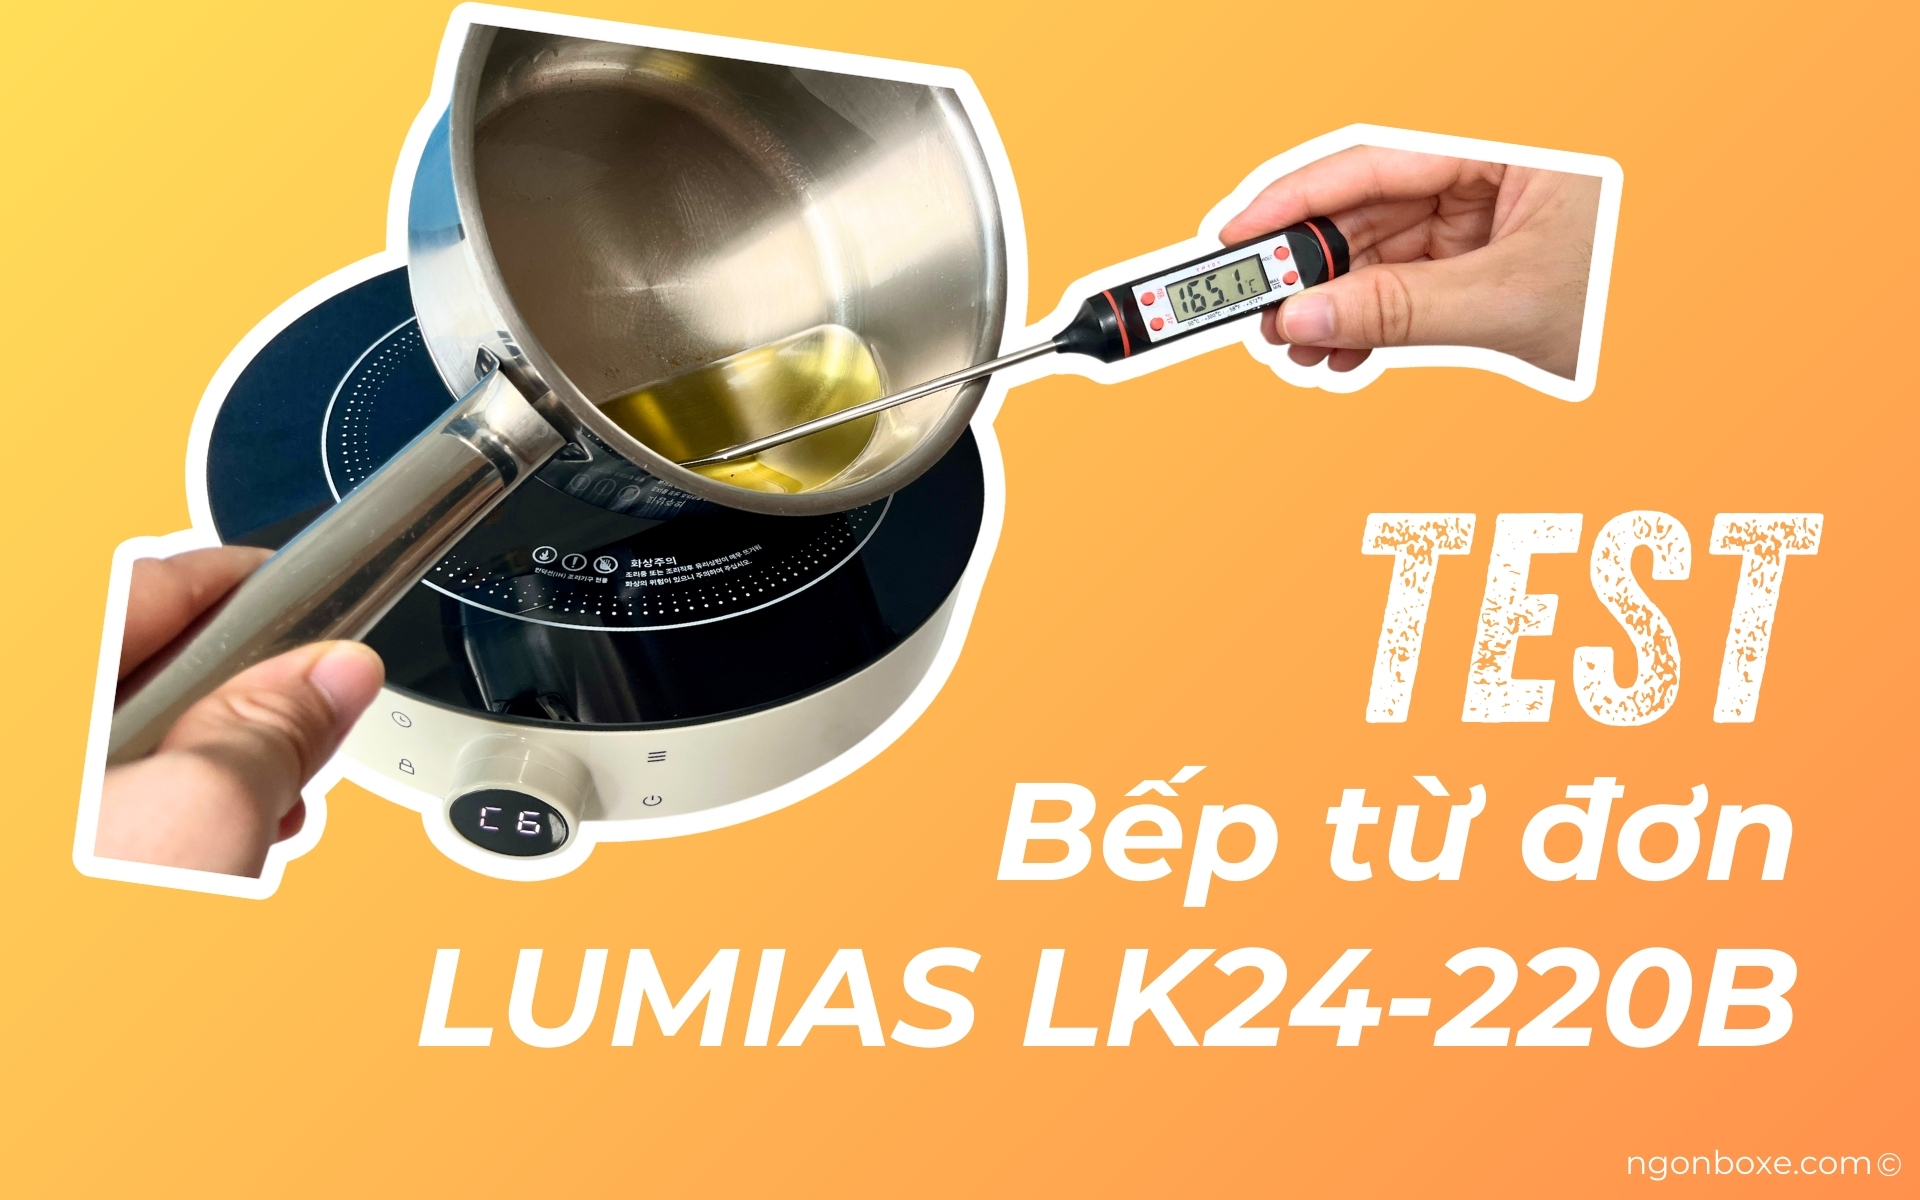 Bếp từ đơn Lumias LK24-220B có tính năng giữ nhiệt cố định